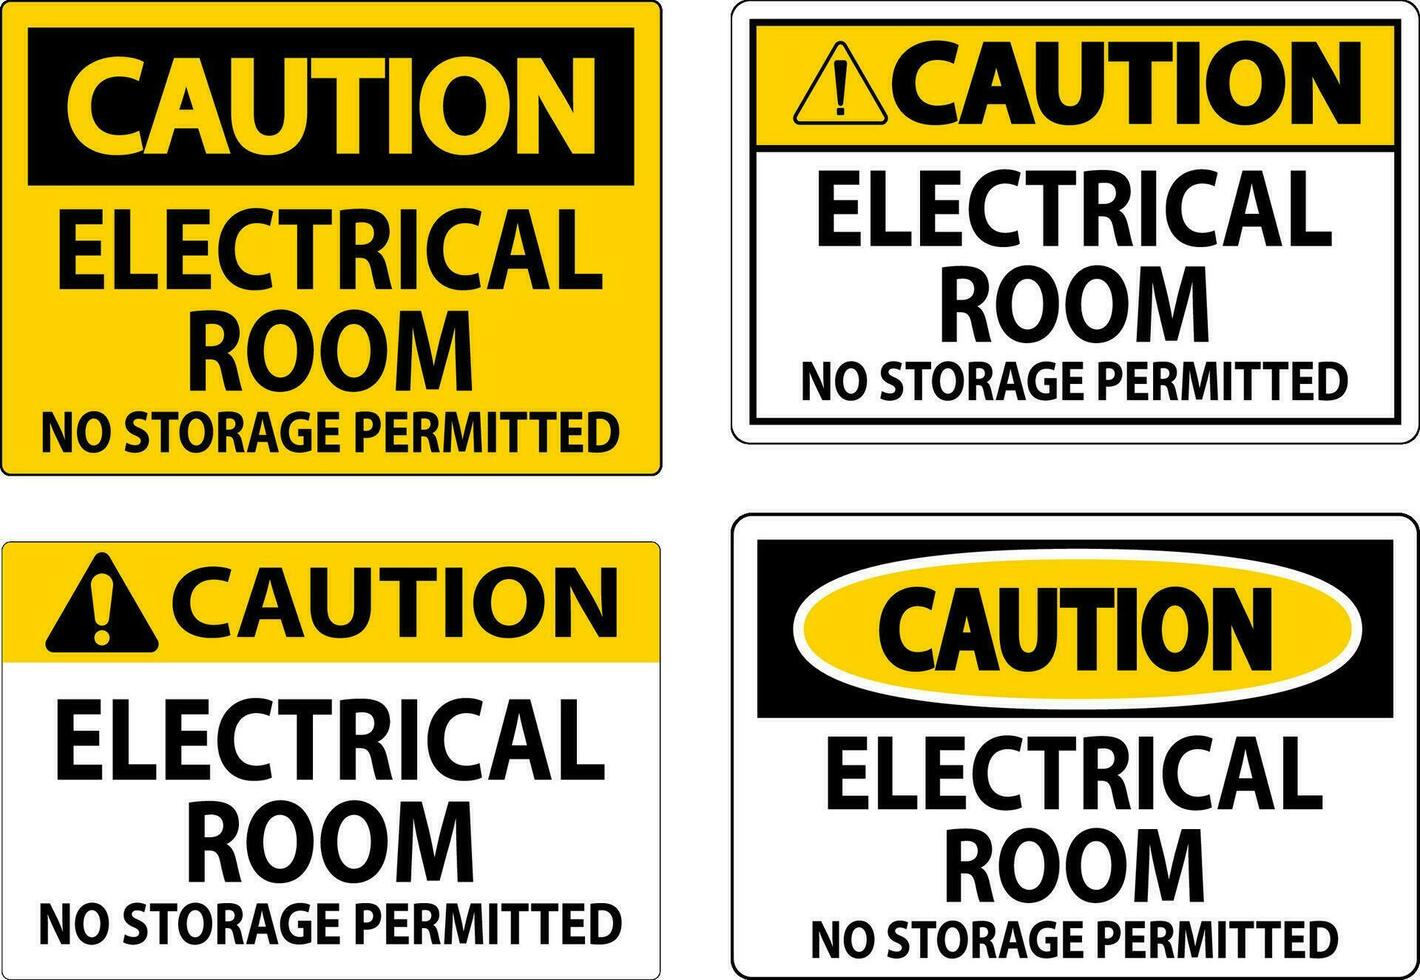 Vorsicht Zeichen elektrisch Zimmer, Nein Lager zulässig vektor